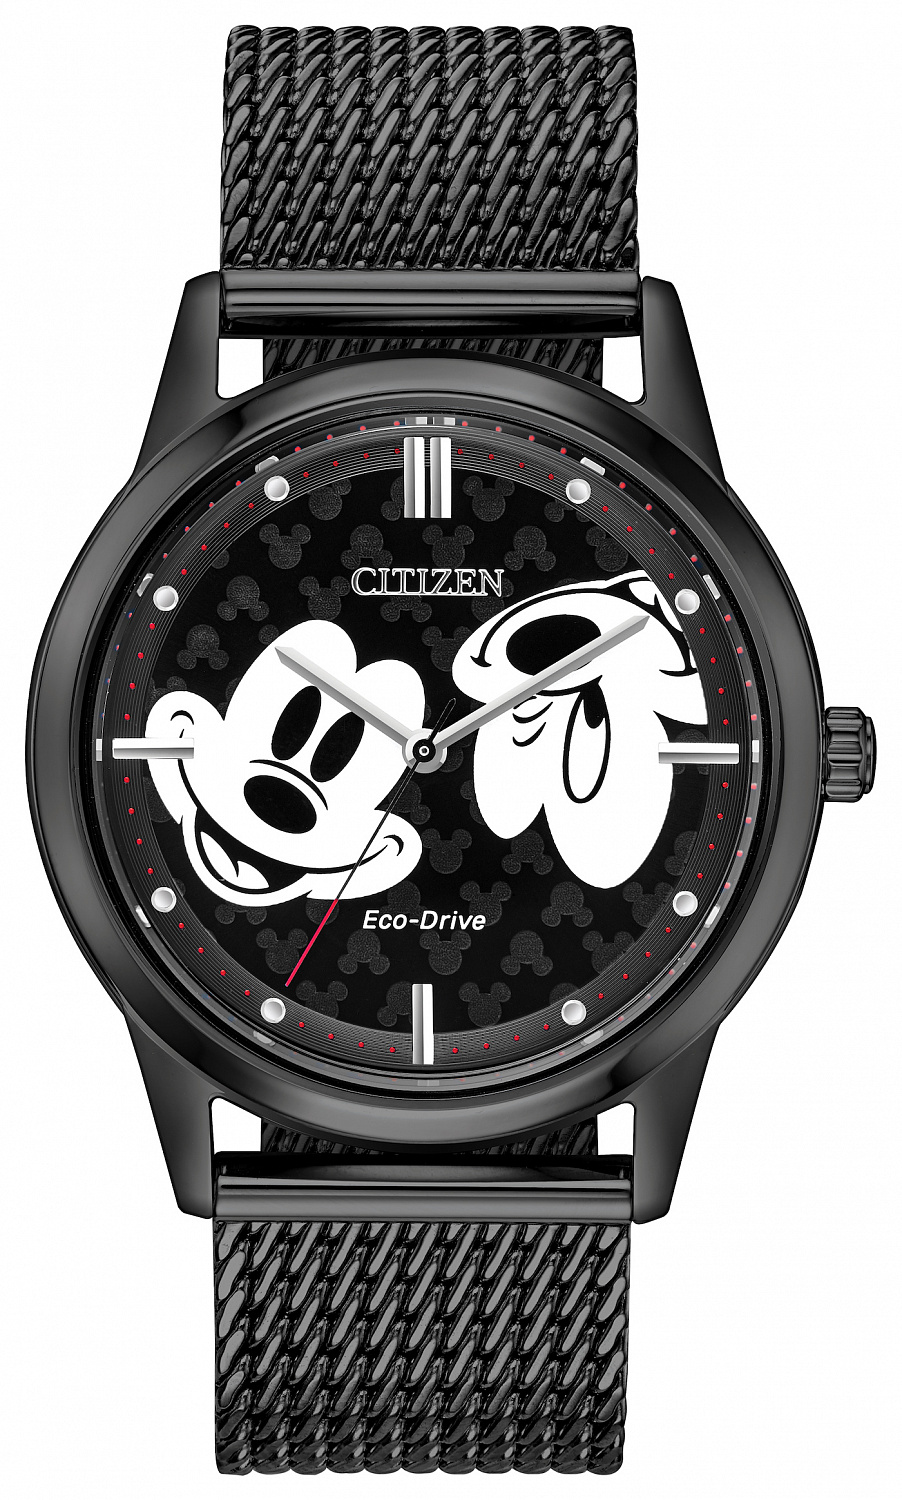 Микки Маус (Mickey Mouse) это один из самых культовых персонажей мультфильмов, который занимает заметное место в культурном пространстве современности. Изображение этого героя мультфильмов Уолта Диснея уже использовали в оформлении своих часов самые известные часовые марки. Теперь симпатичный мышонок украсил циферблаты часов Citizen из новой коллекции, выпуск которых начала японская компания совместно со студией Disney.
